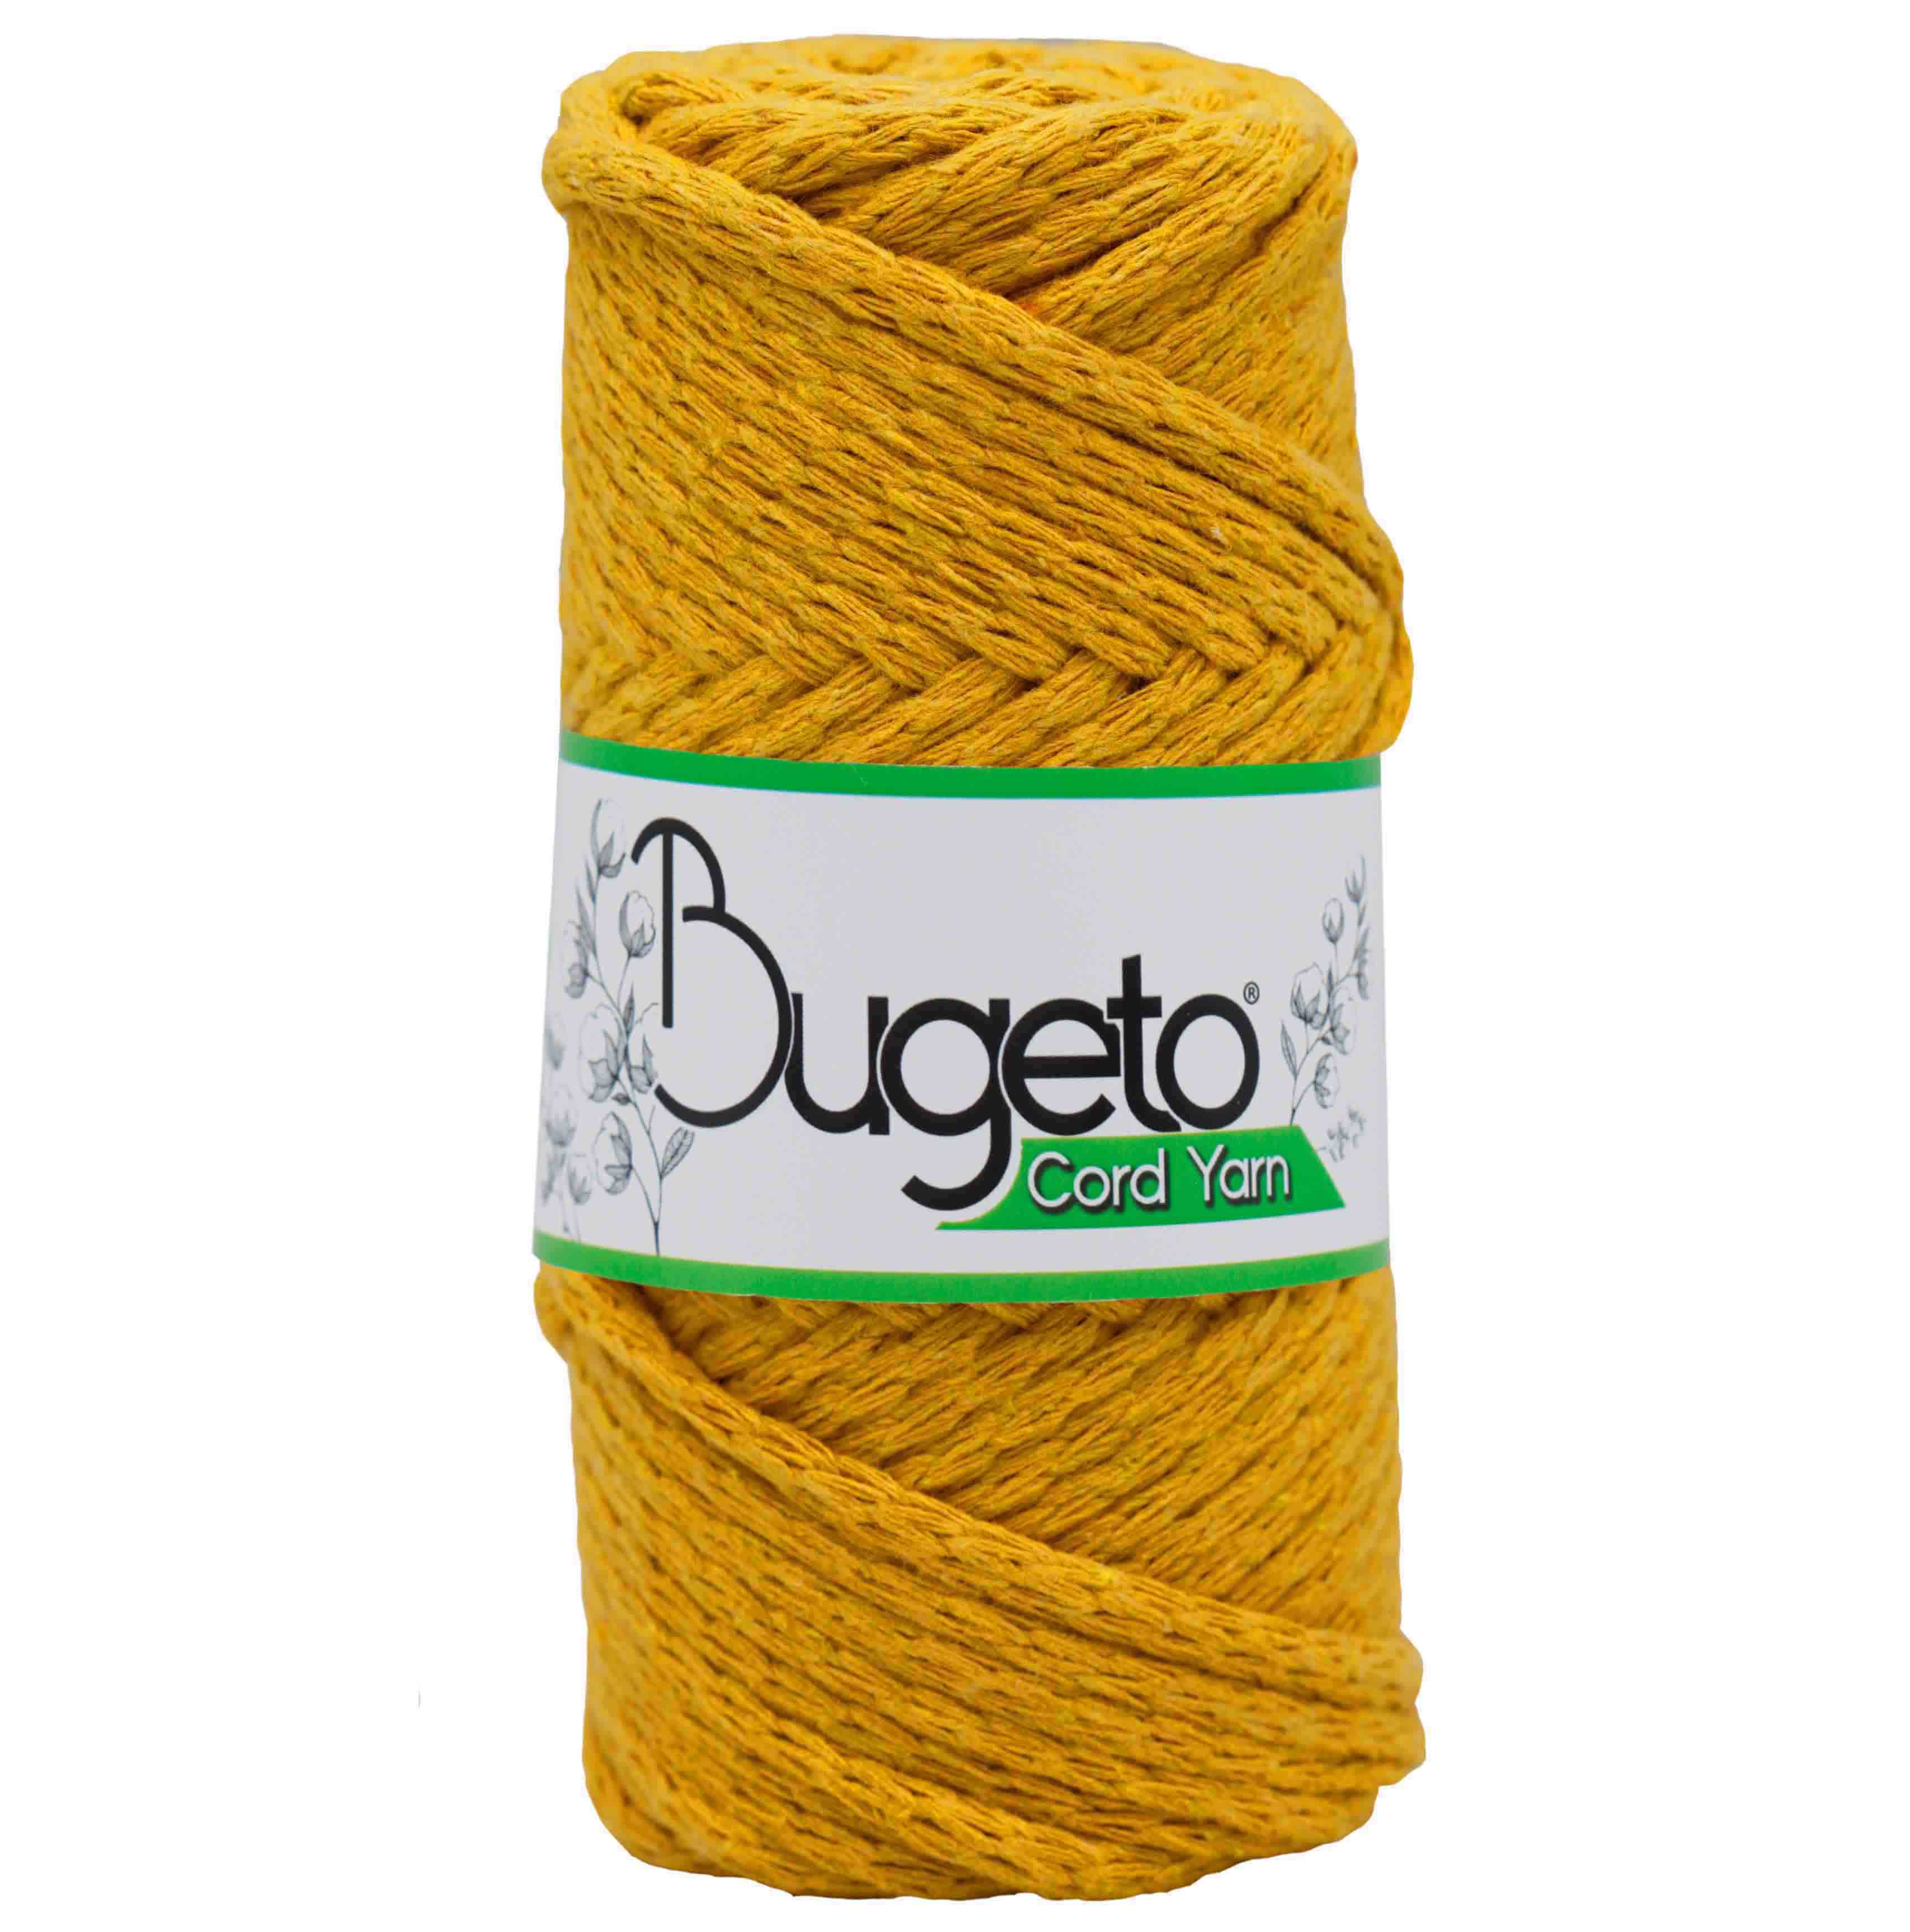 cord yarns cotton yarns bugeto yarn